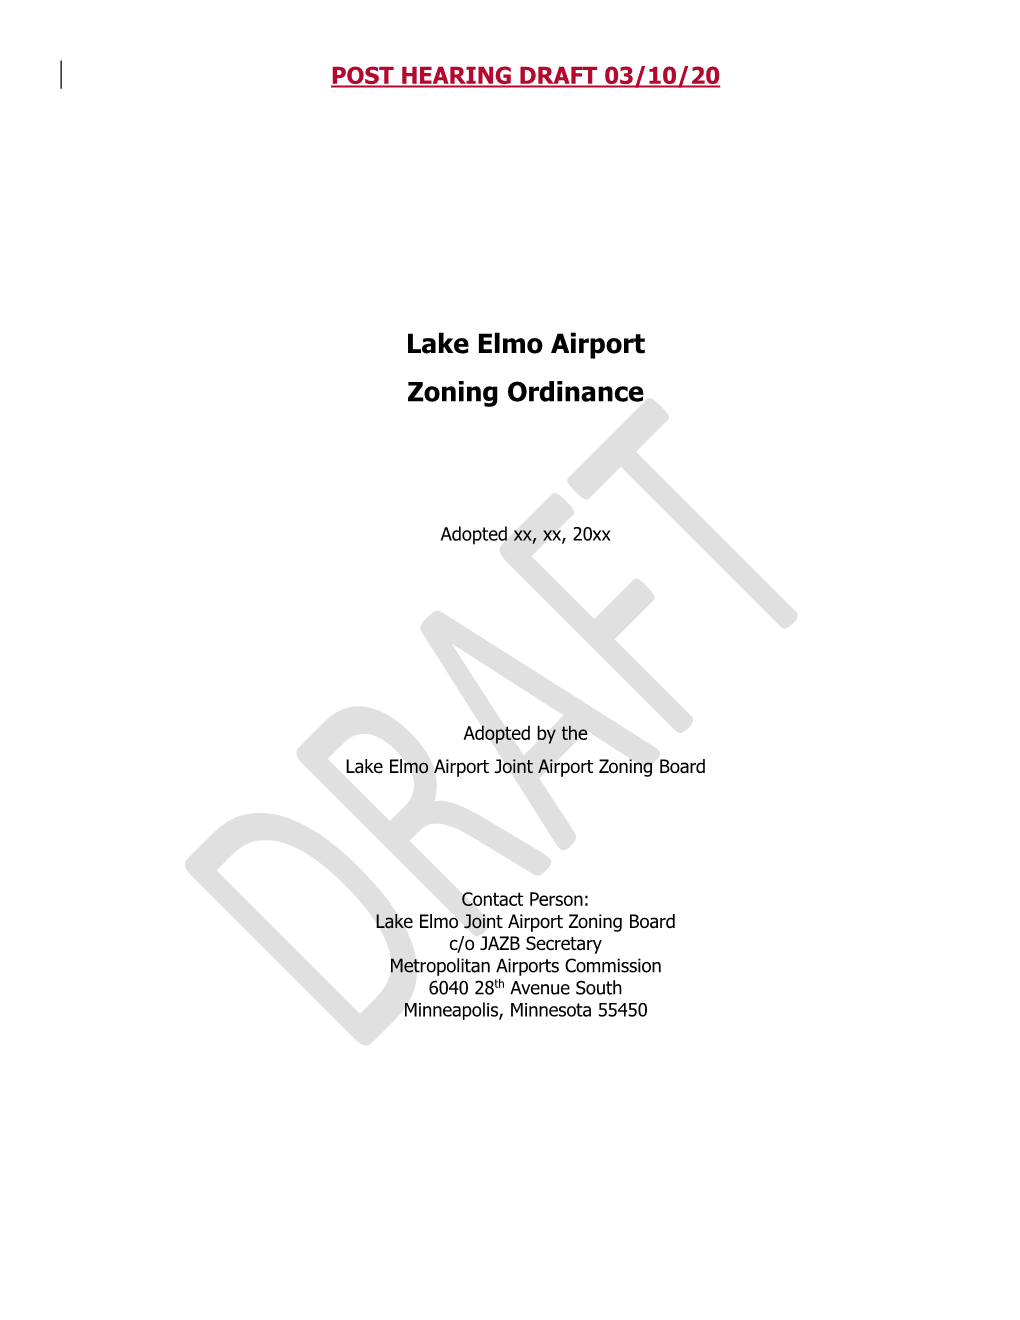 Lake Elmo Airport Zoning Ordinance